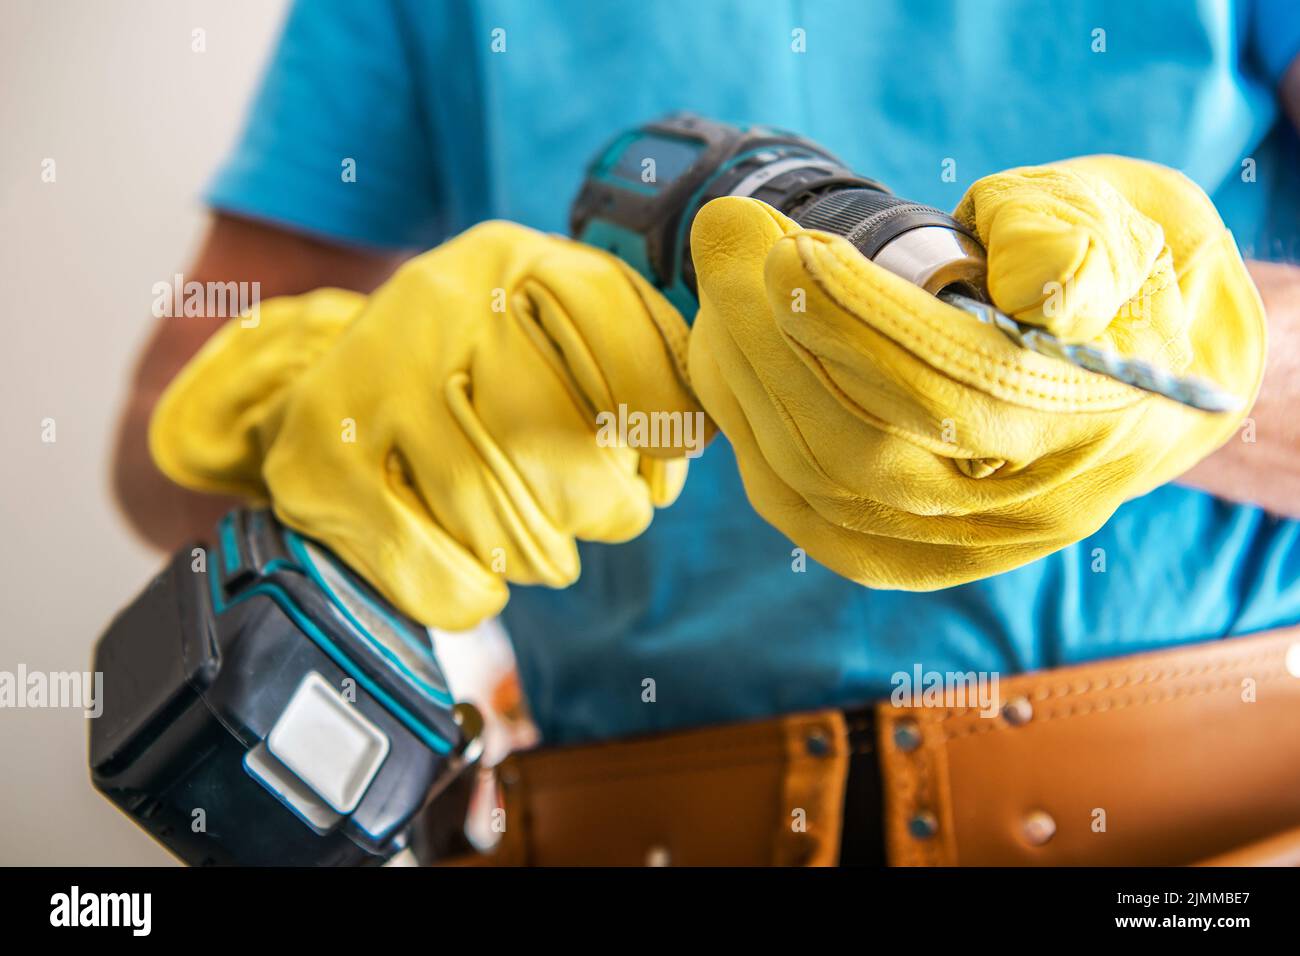 Nahaufnahme der elektrischen Bohrmaschine in den Händen eines professionellen Bauarbeiters mit gelben Schutzhandschuhen. Thema „Professionelle Elektrowerkzeuge“. Stockfoto